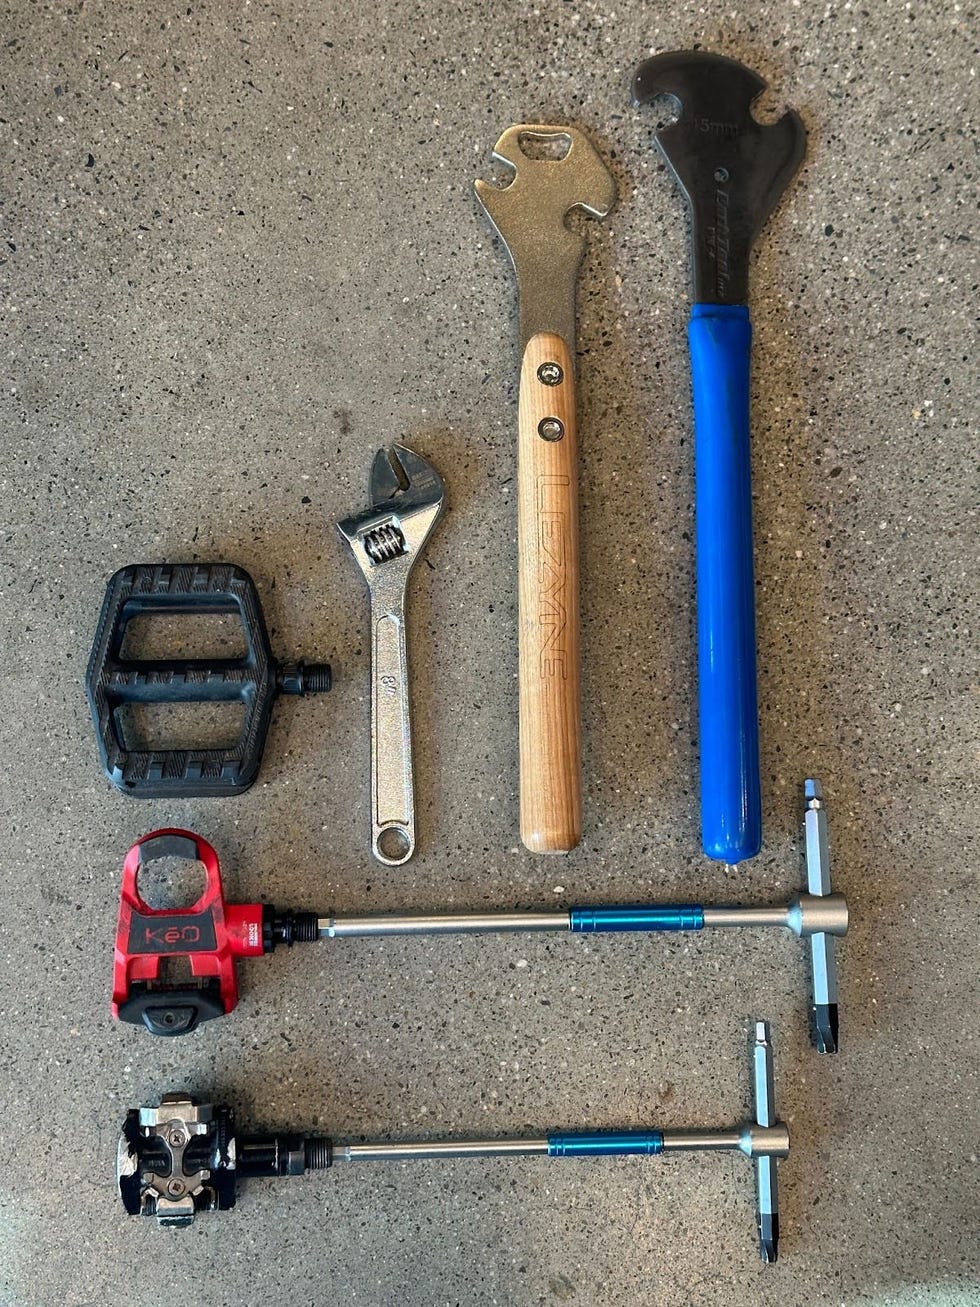 pedals tools